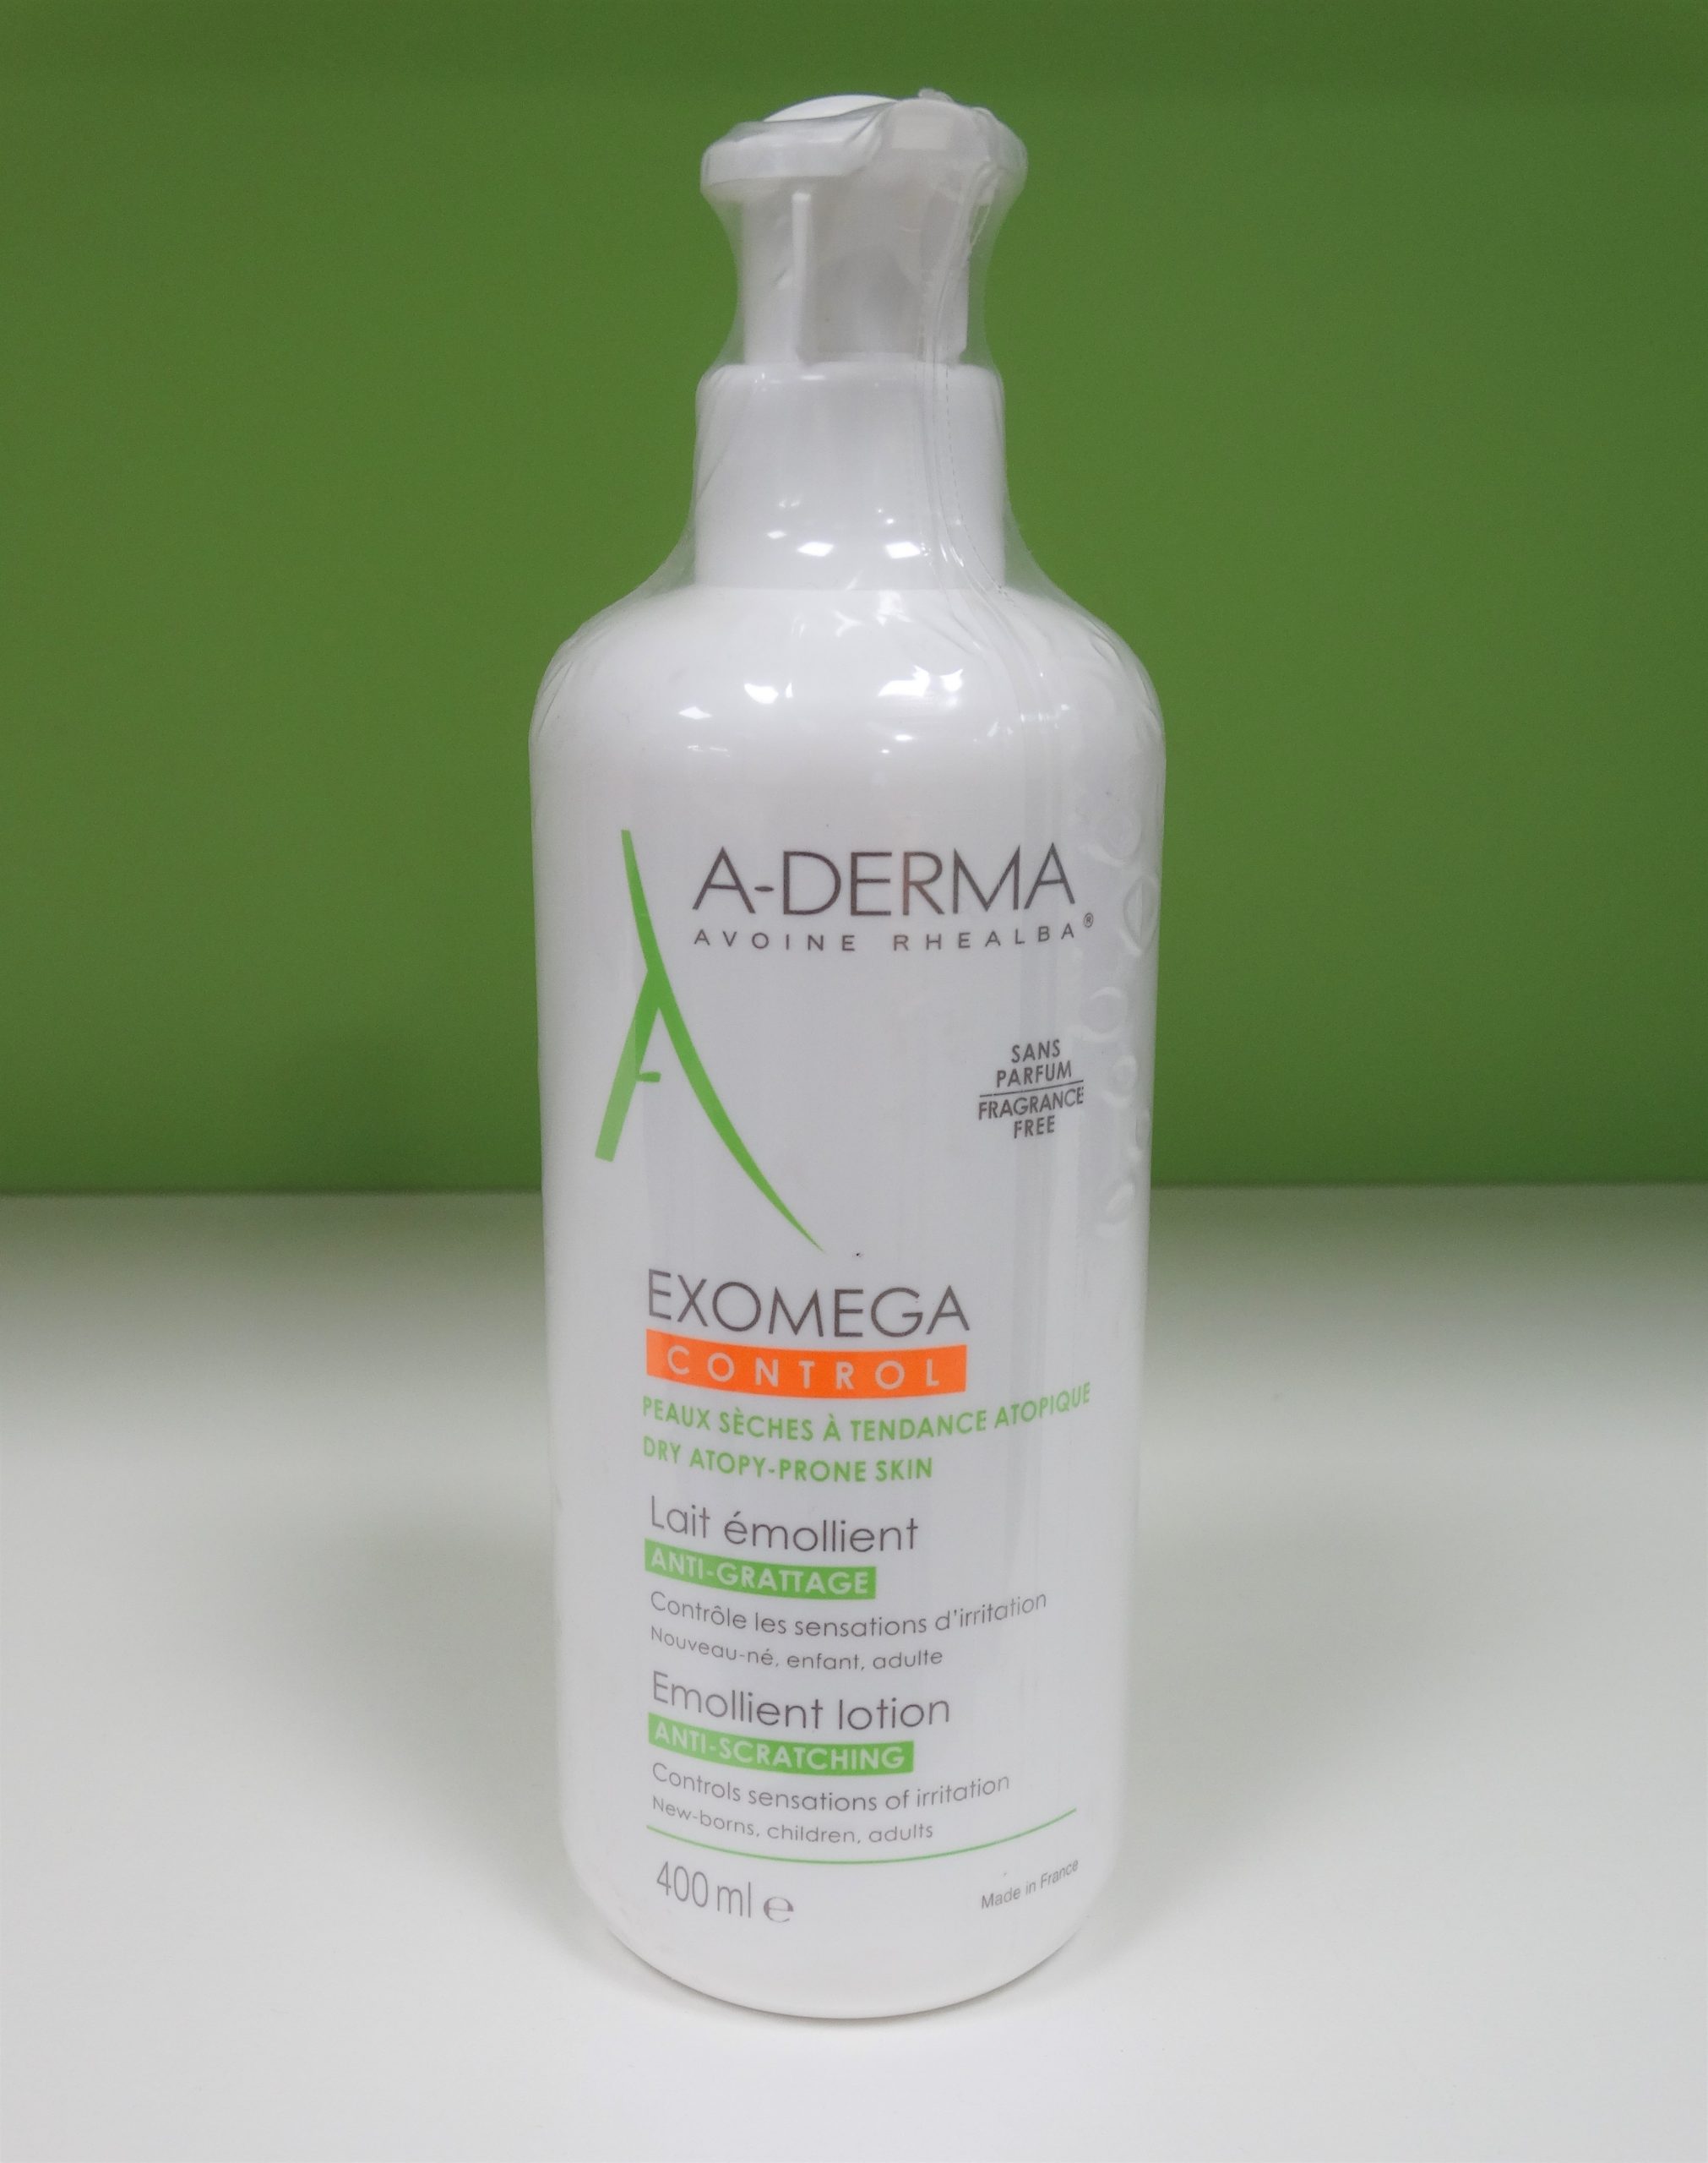 A-Derma Exomega Crema Emoliente 400 ml es una crema emoliente que desde la primera aplicación consigue espaciar los episodios de irritación,